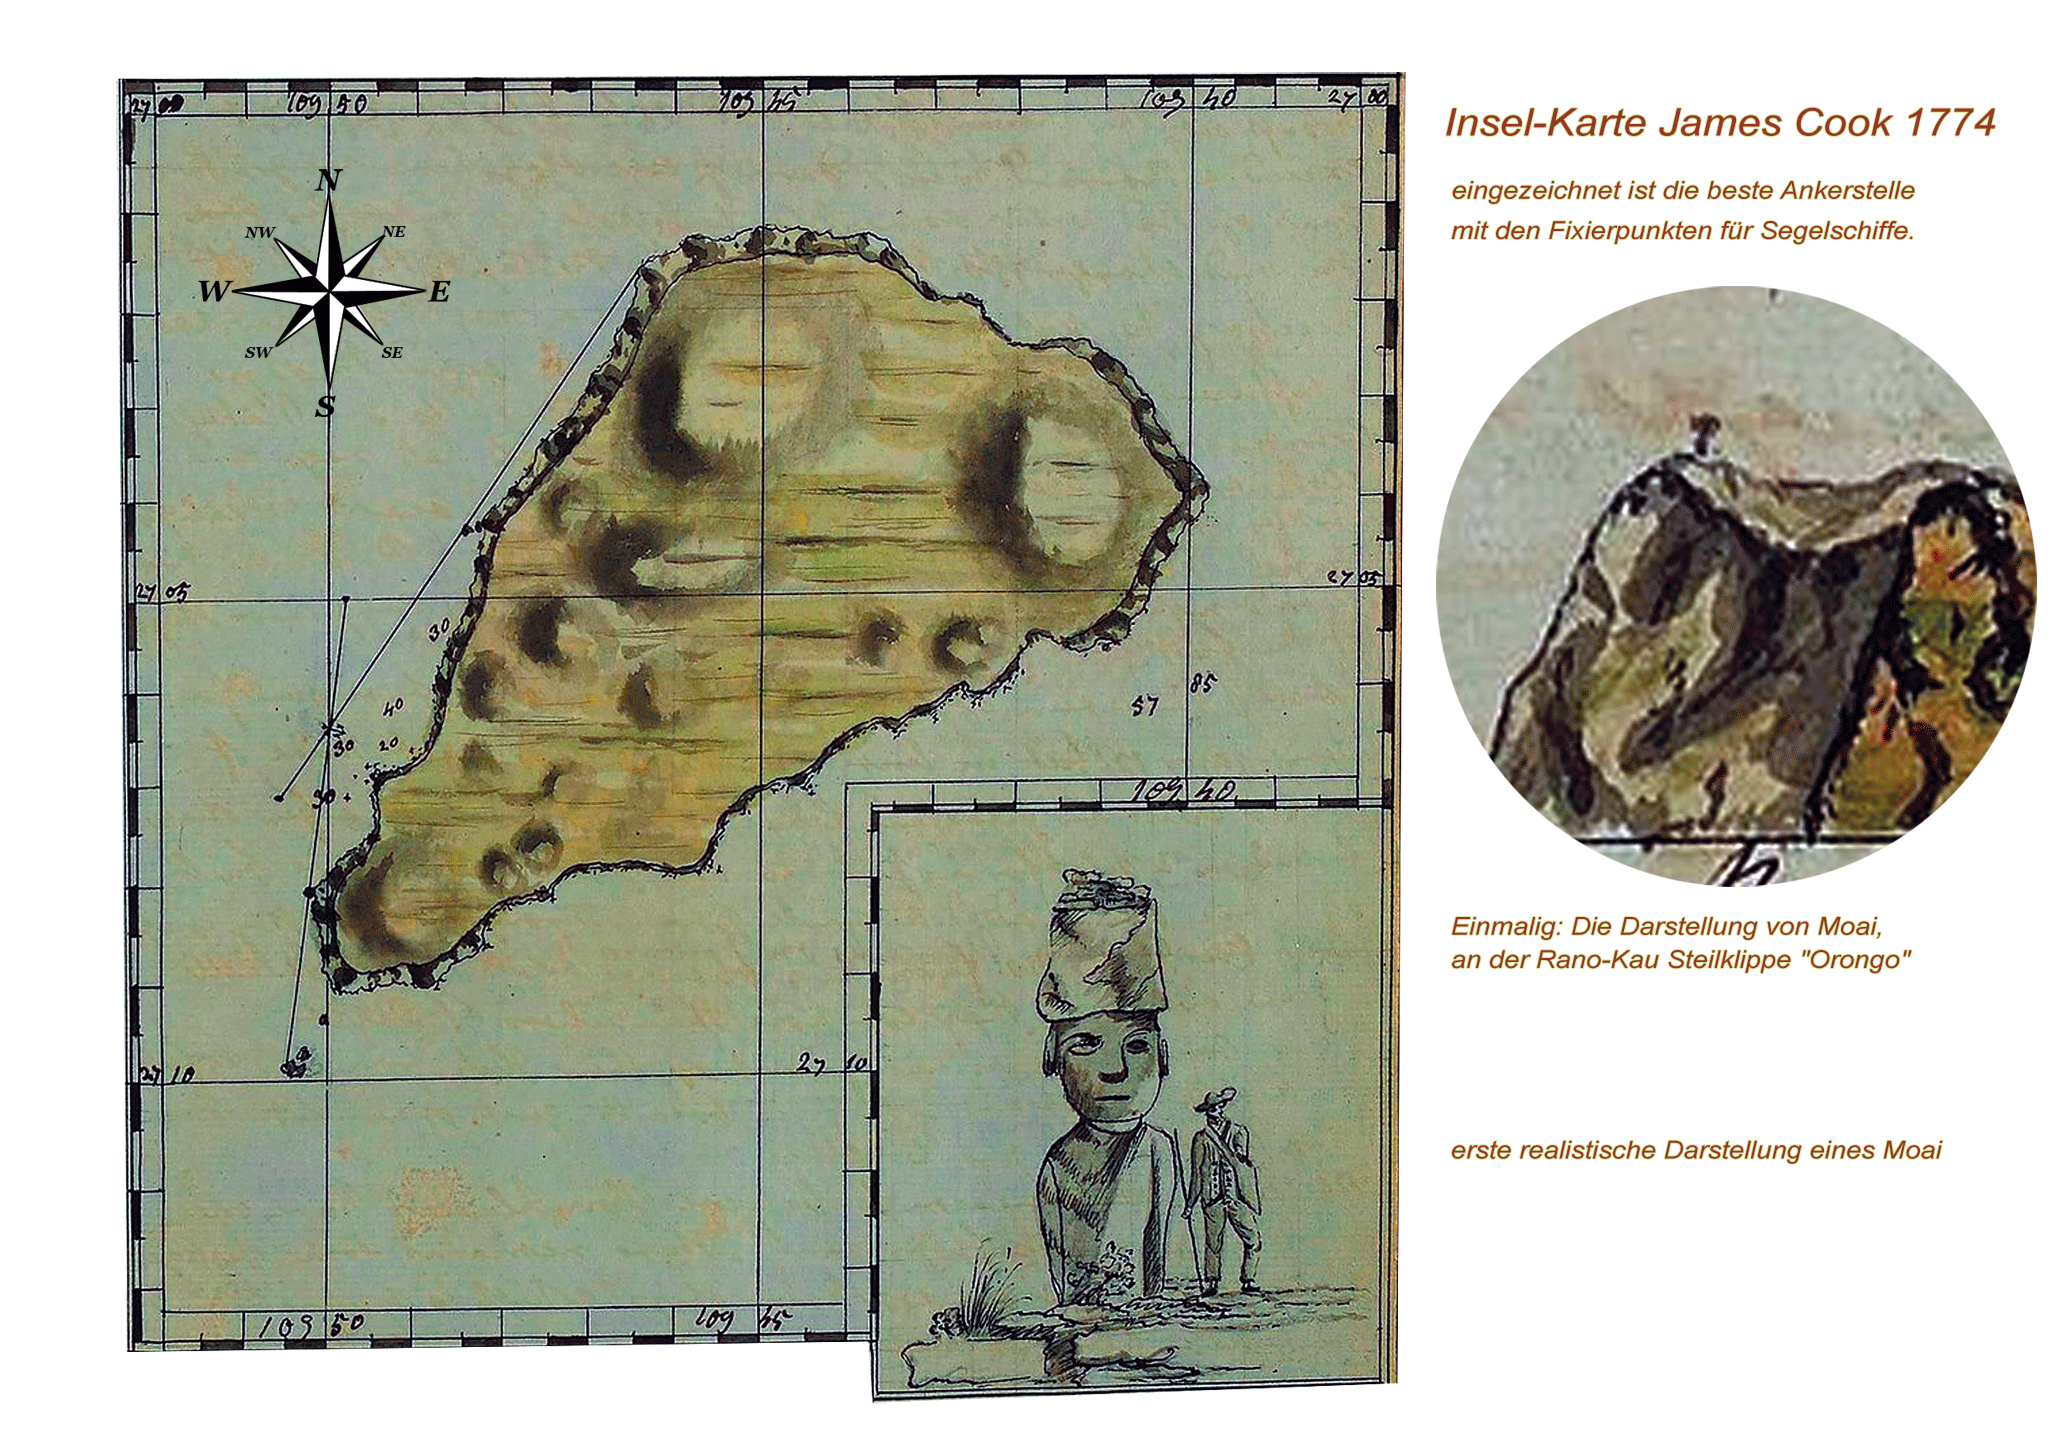 Osterinsel Karte von 1774 - James Cook